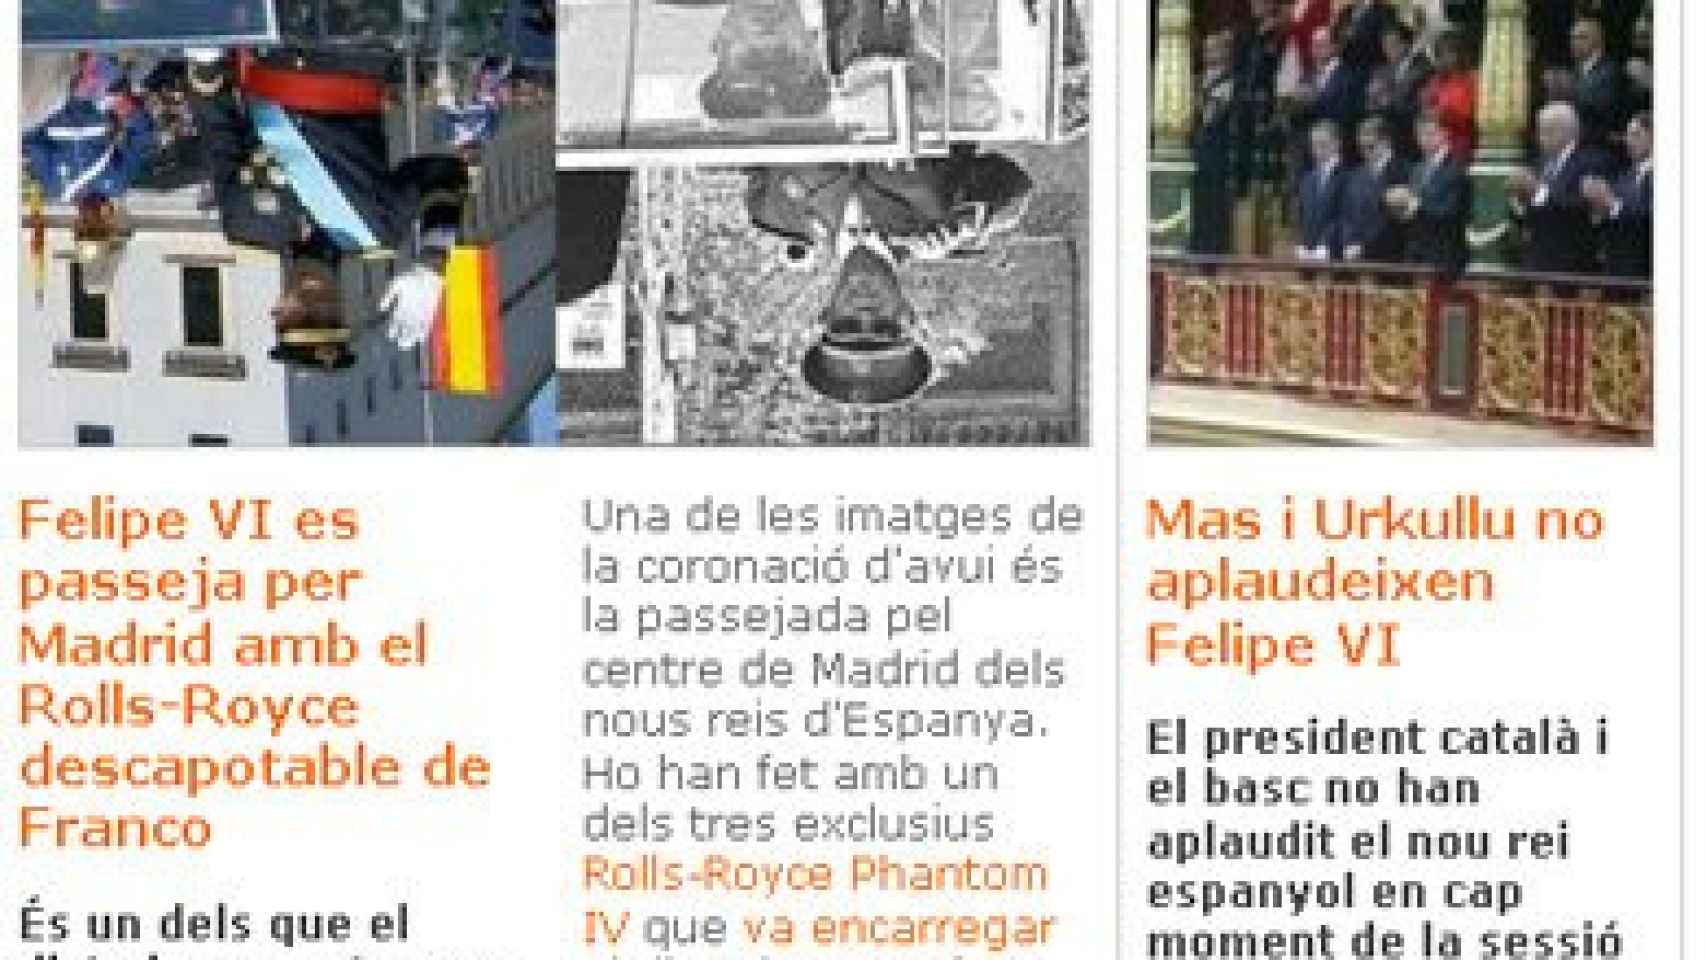 Fragmento de la portada de 'Vilaweb' con dos noticias sobre la proclamación de Felipe VI. La primera, boca abajo. La segunda, donde aparece Artur Mas, en su posición correcta.